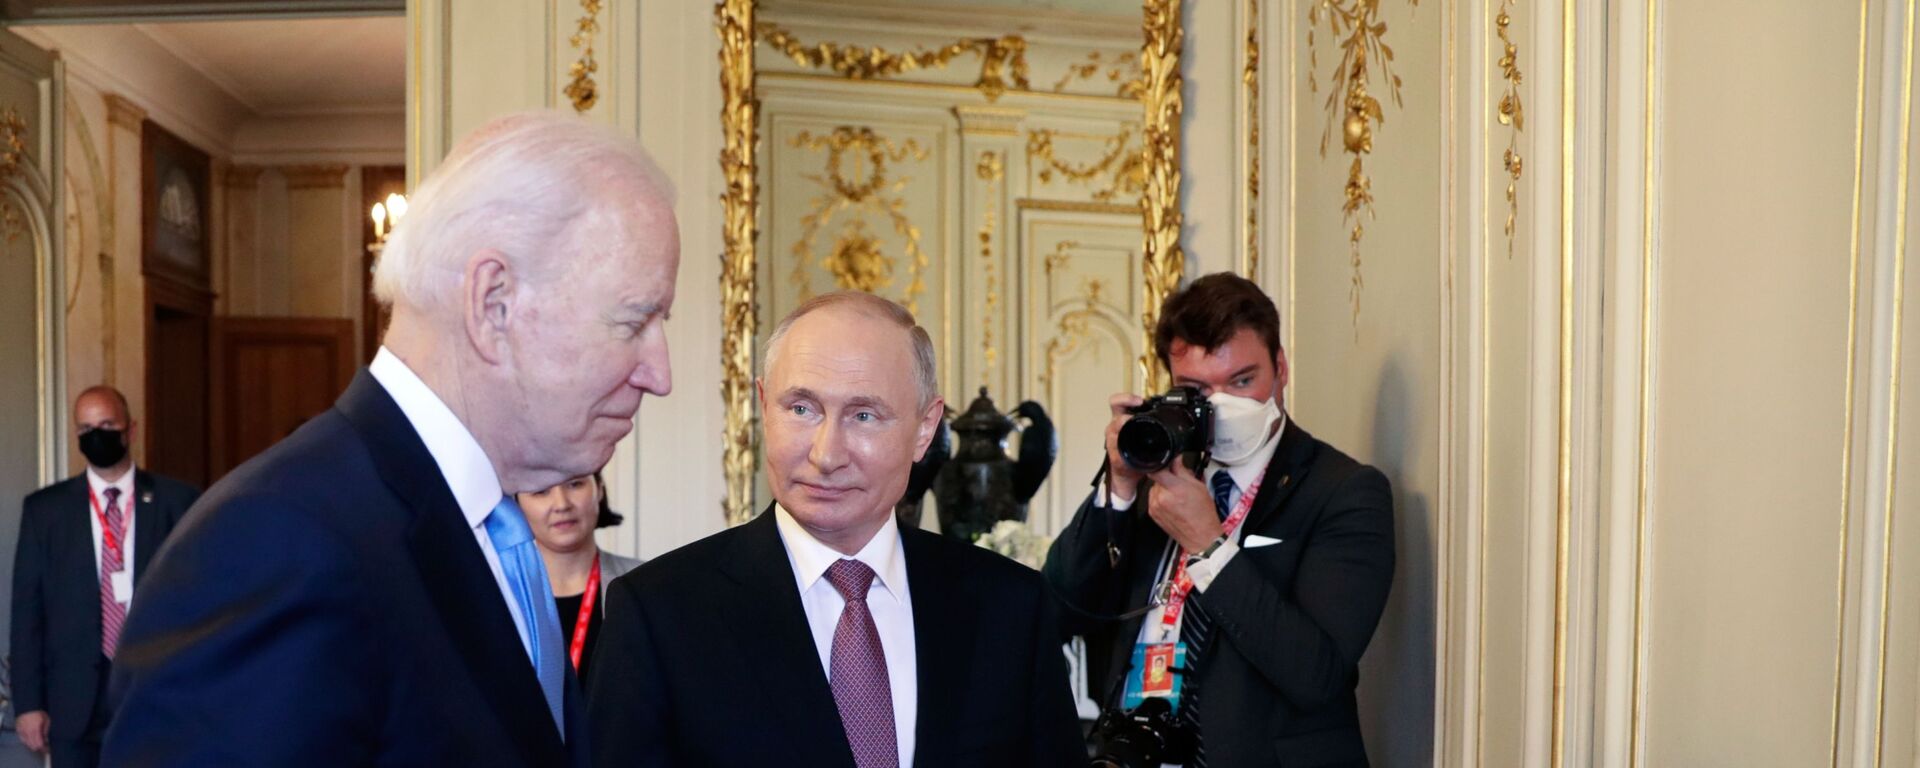 Tổng thống Nga Vladimir Putin và Tổng thống Mỹ Joe Biden gặp gỡ tại Geneva - Sputnik Việt Nam, 1920, 11.11.2021